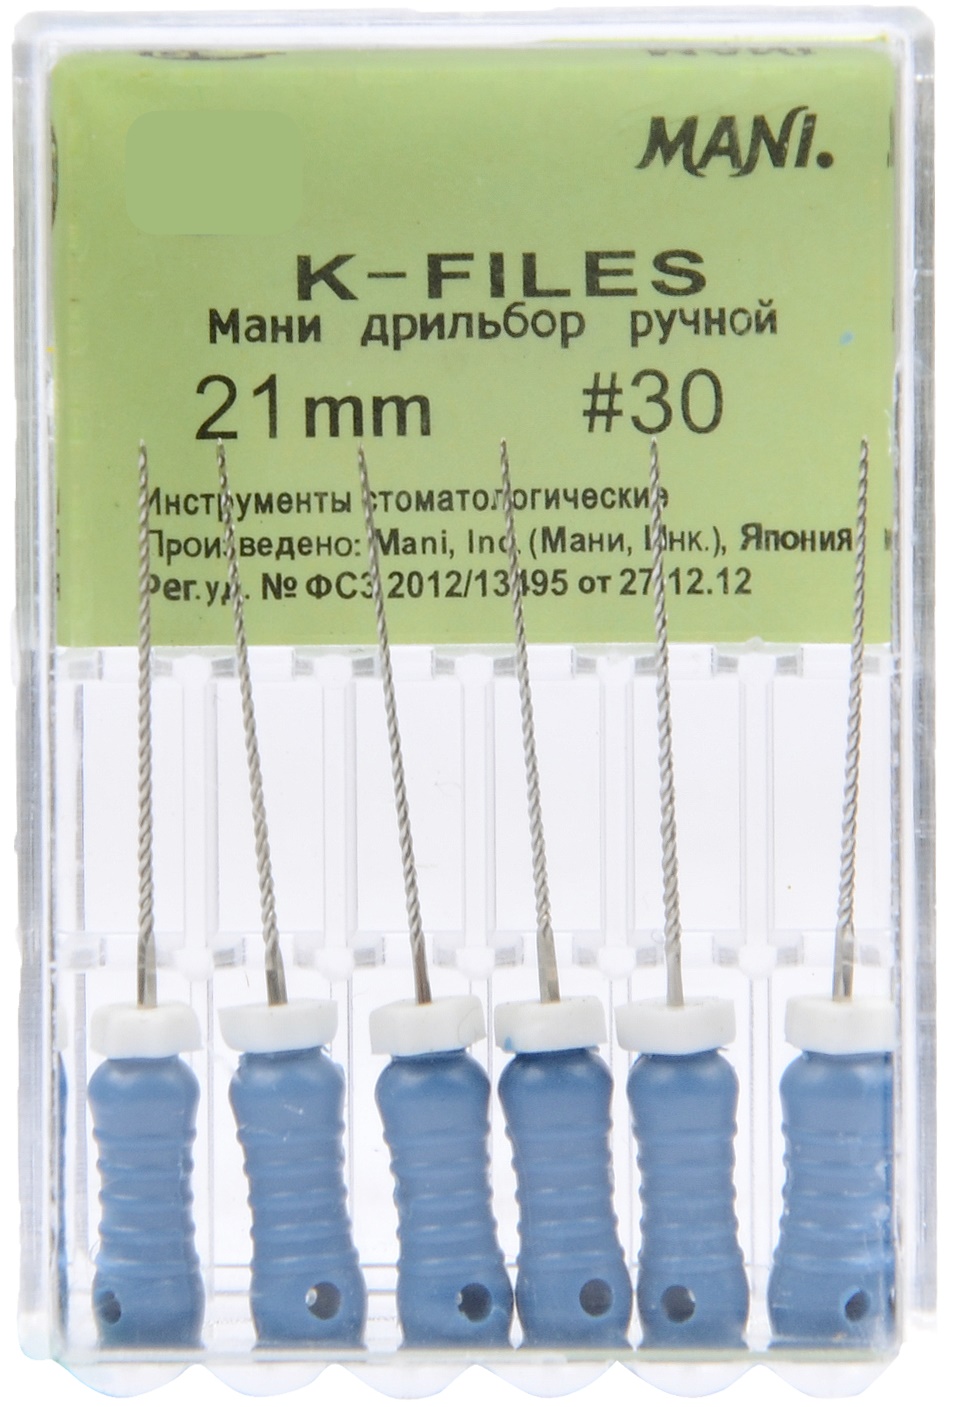 K-File 21mm #30 - Mani